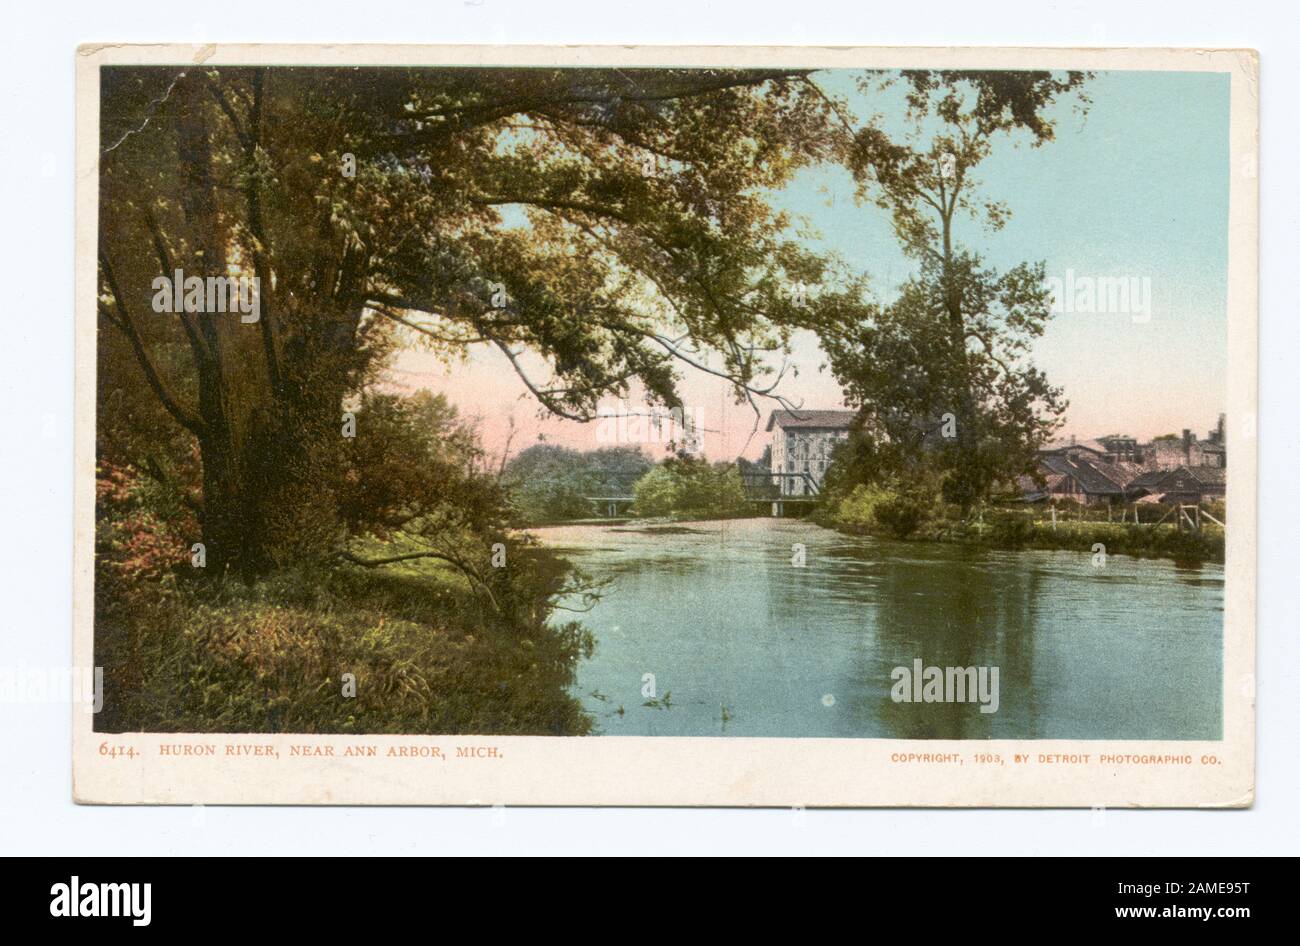 La rivière Huron, près d'Ann Arbor, Mich Postcard numéro de série : 6414 1902-1903. Passage à l'illustration pleine grandeur, lorsque la réglementation postale permettait l'adresse et le message ensemble à l'envers.; La rivière Huron, près d'Ann Arbor, Michigan. Banque D'Images